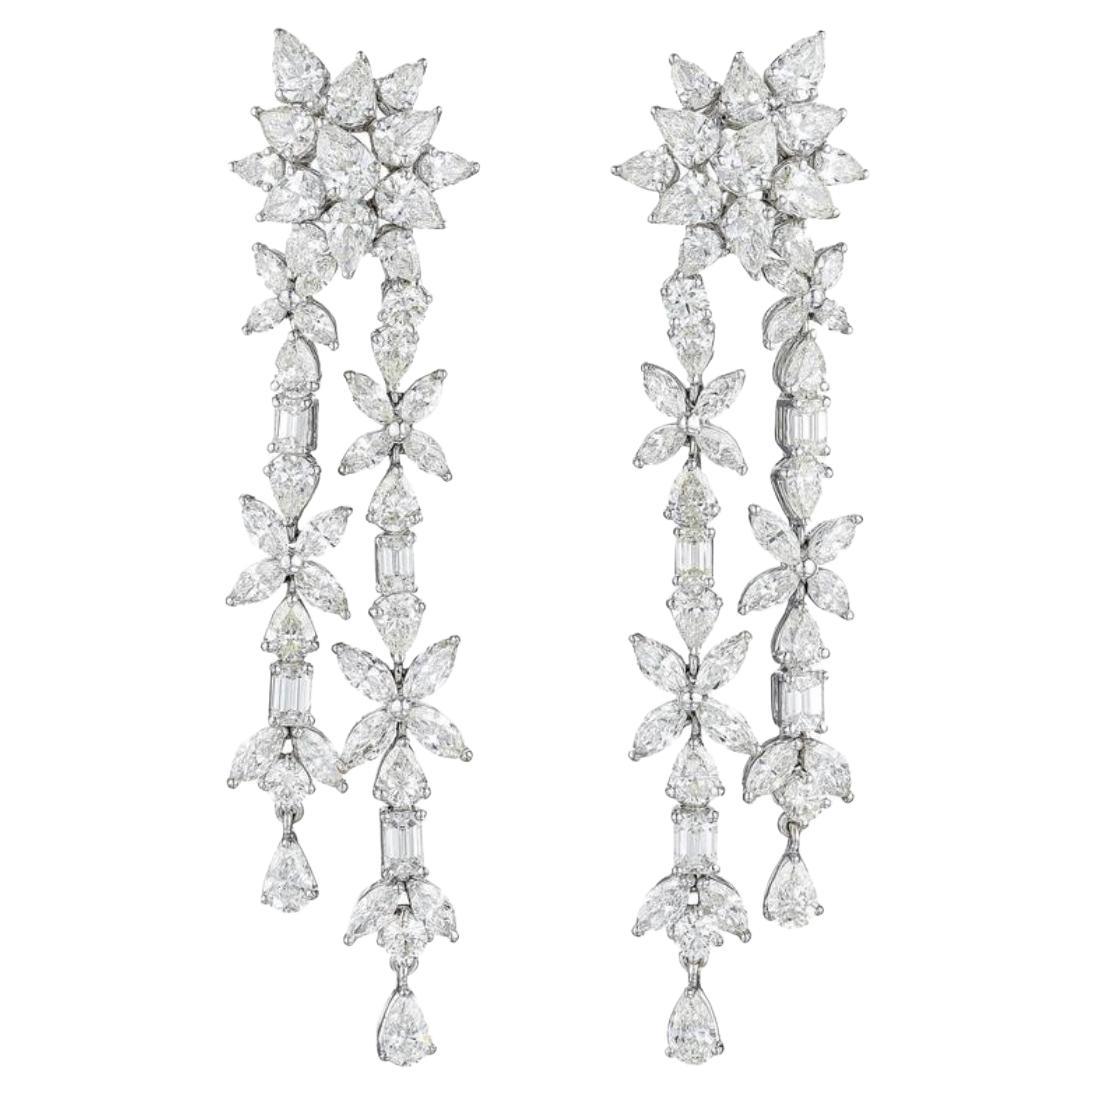 18.92 Carat White Fancy Cut Diamond Chandelier Earrings In 18K White Gold. 